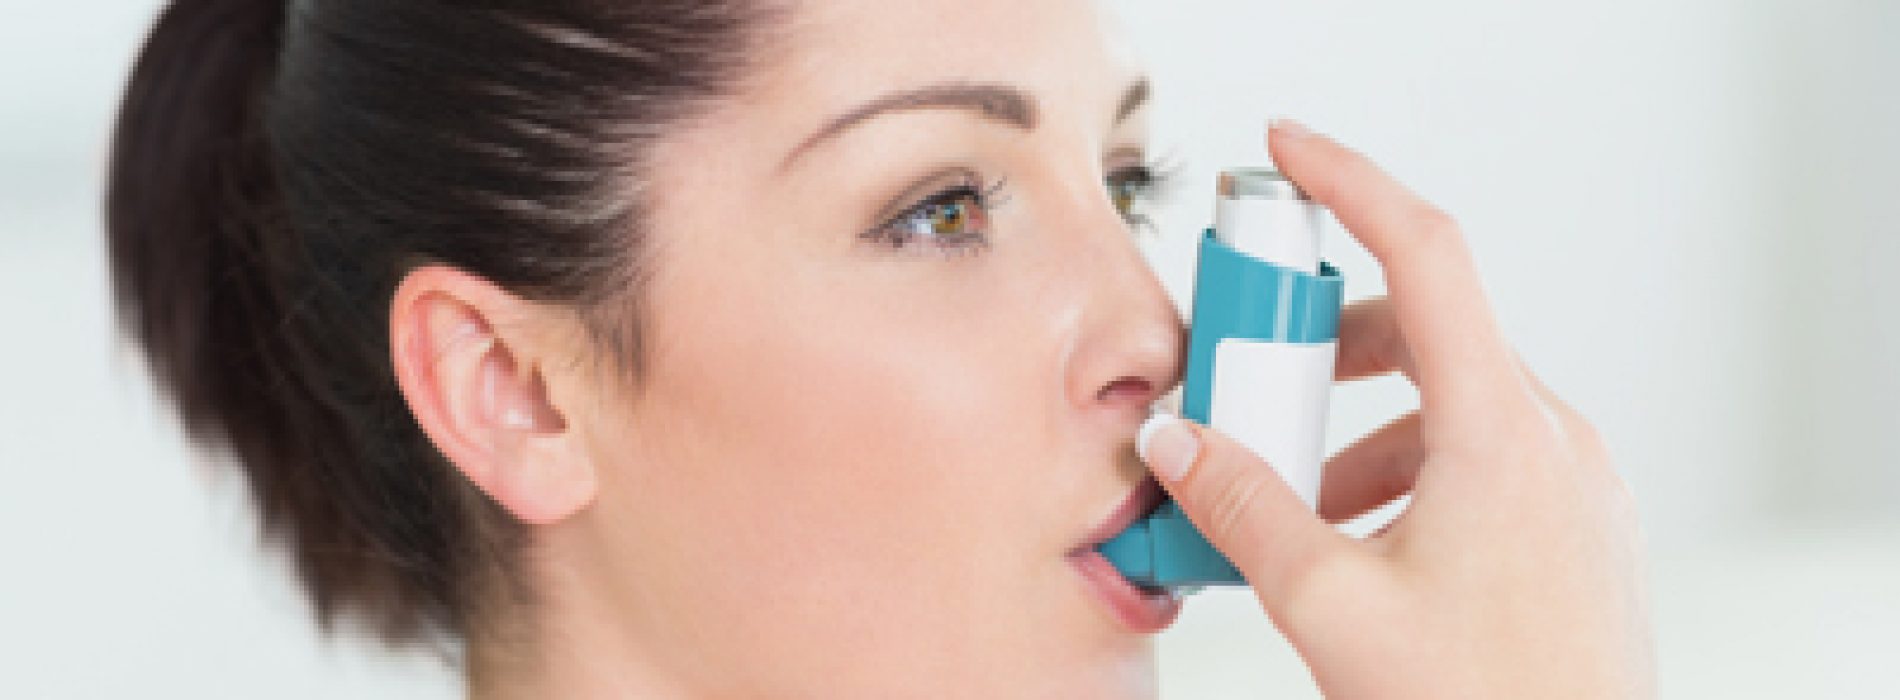 Weinig bekende kruidenmiddelen tegen astma en COPD